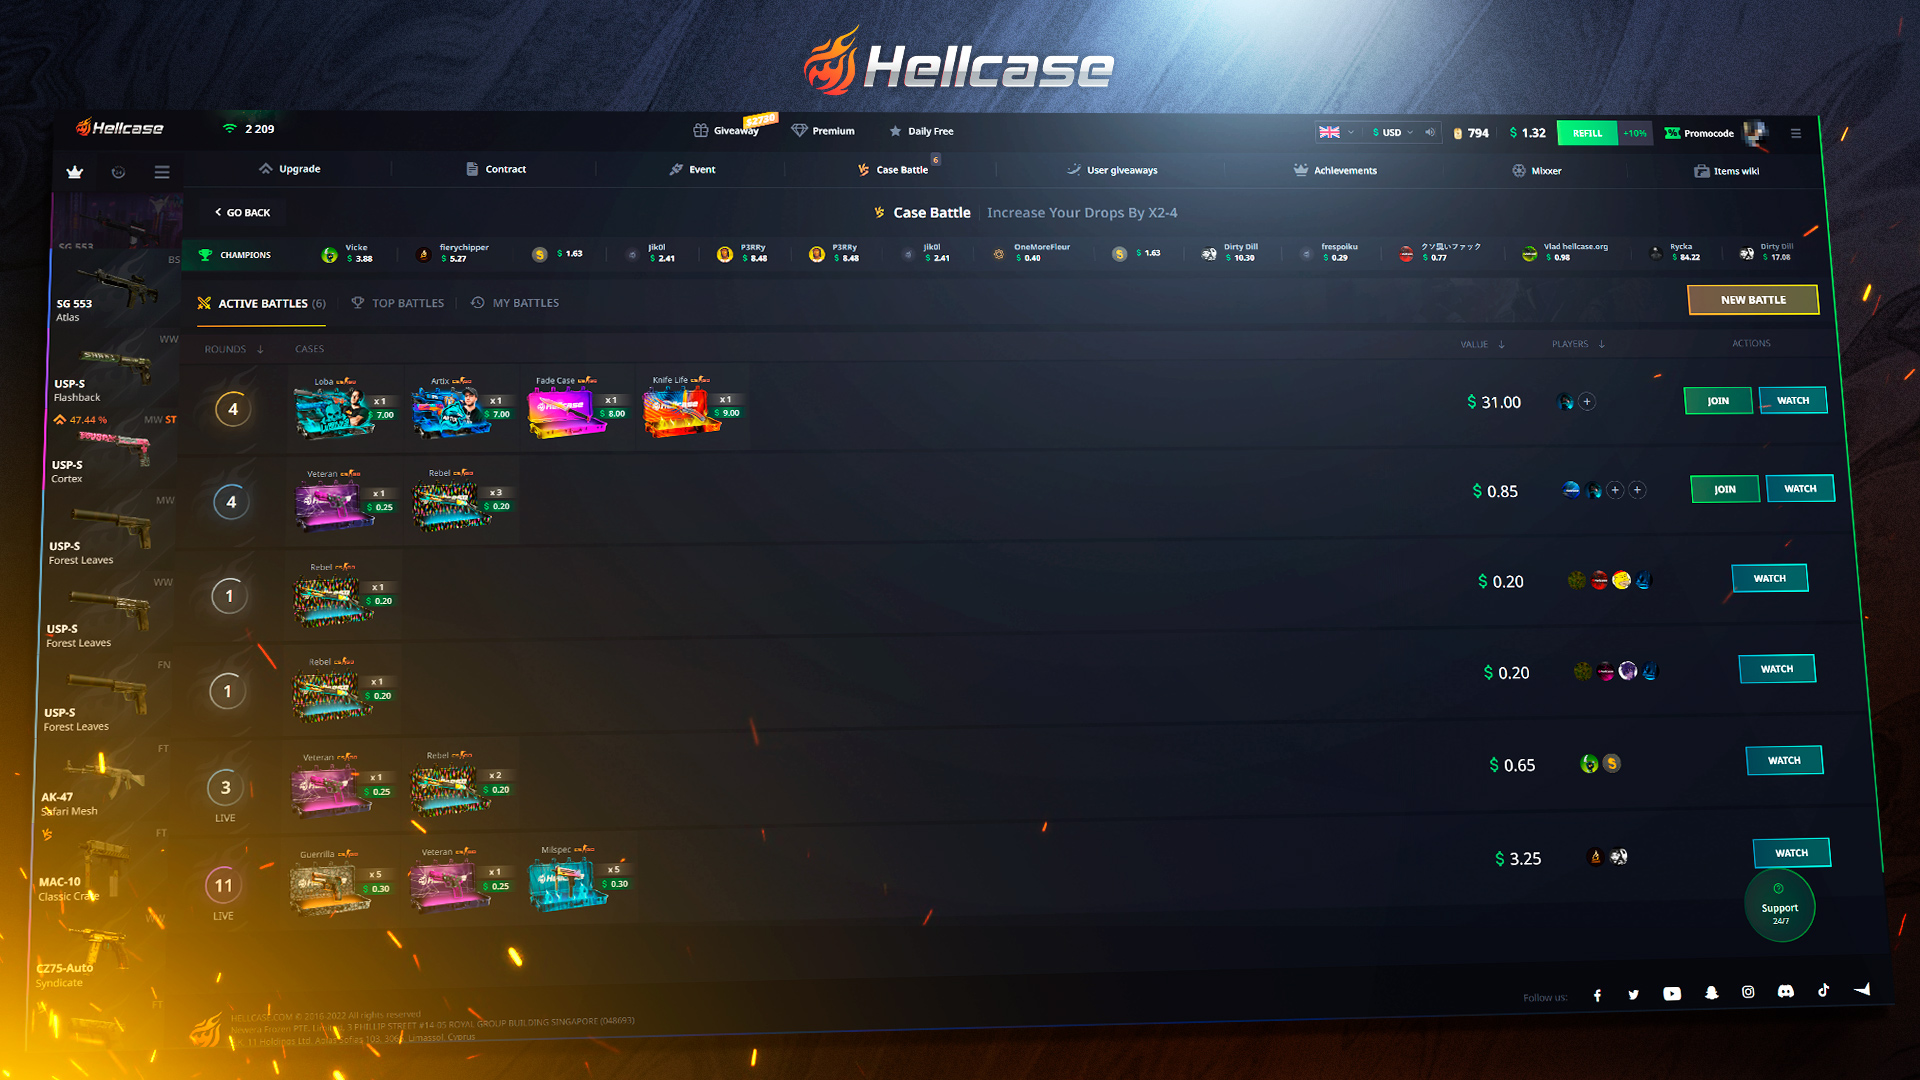 Hellcase.com 100 USD Wallet Card Code